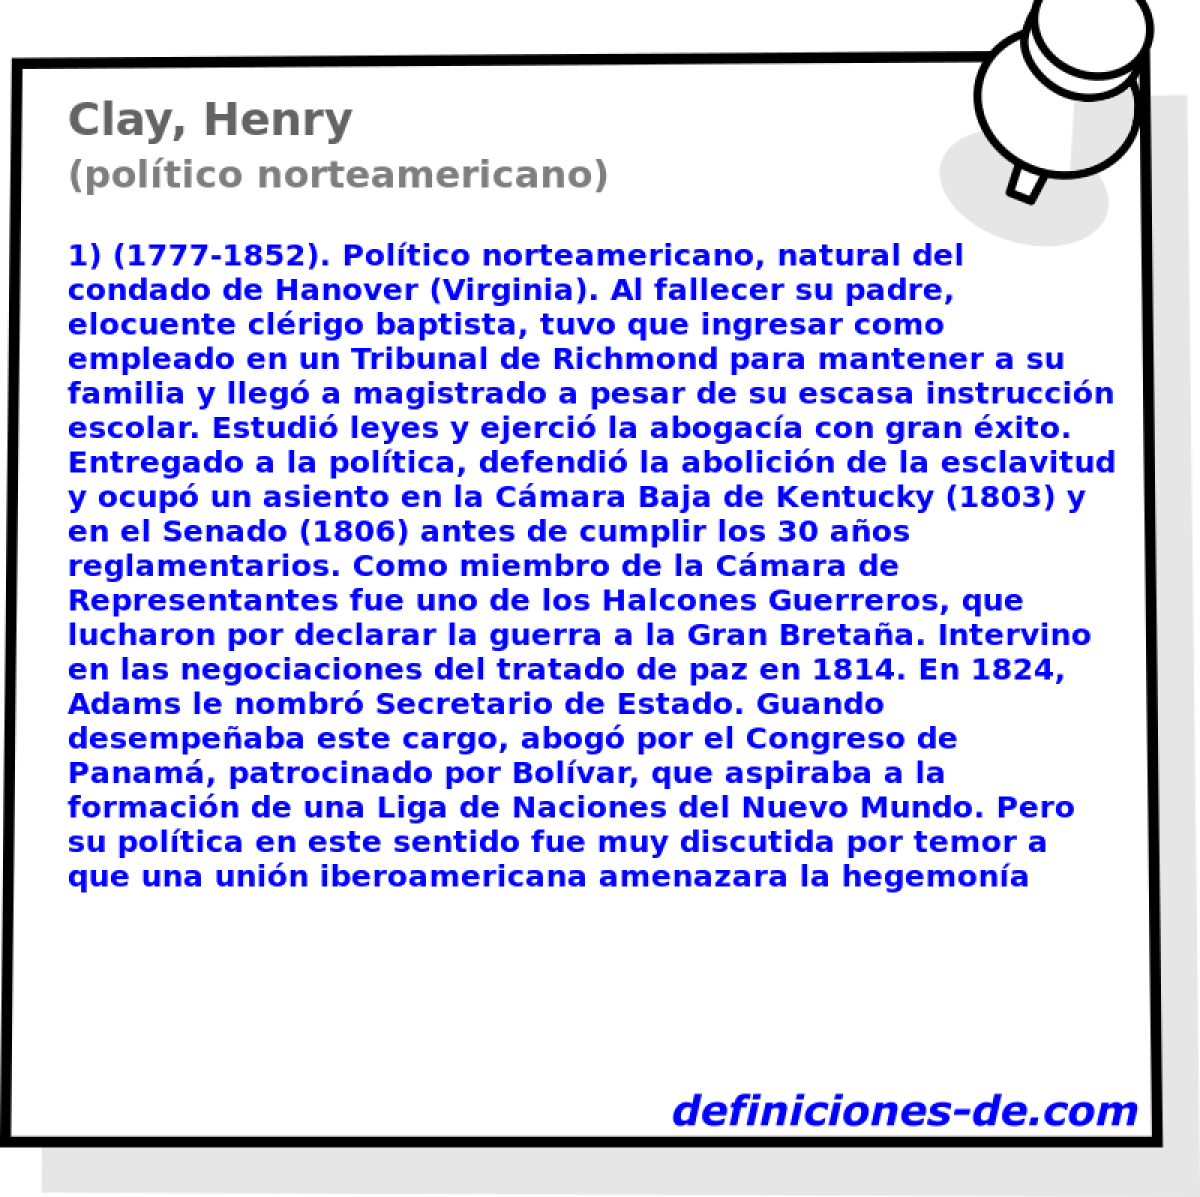 Clay, Henry (poltico norteamericano)